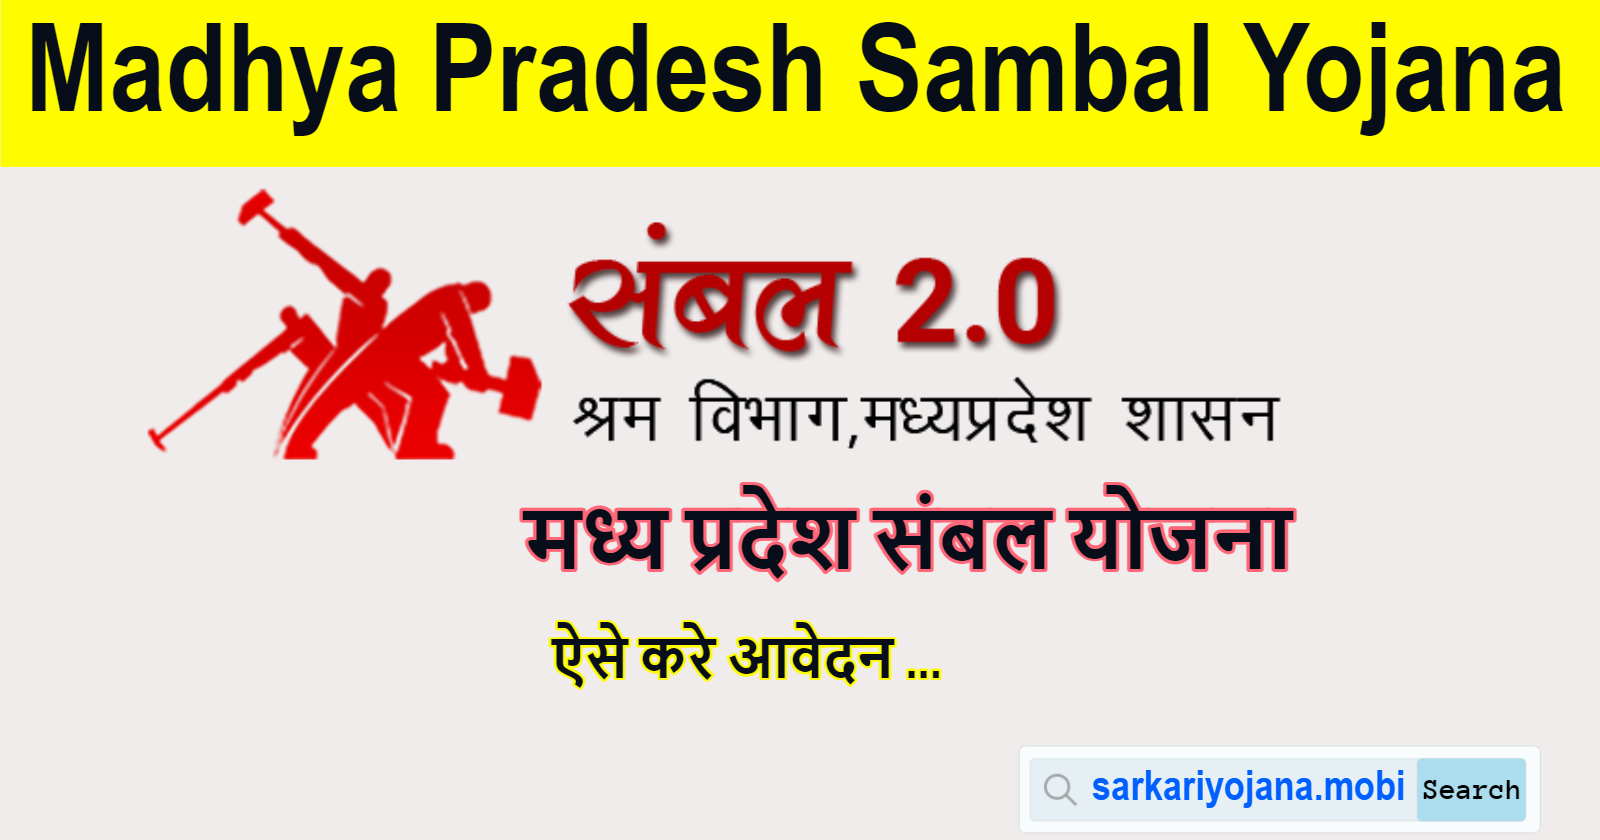 Madhya Pradesh Sambal Yojana